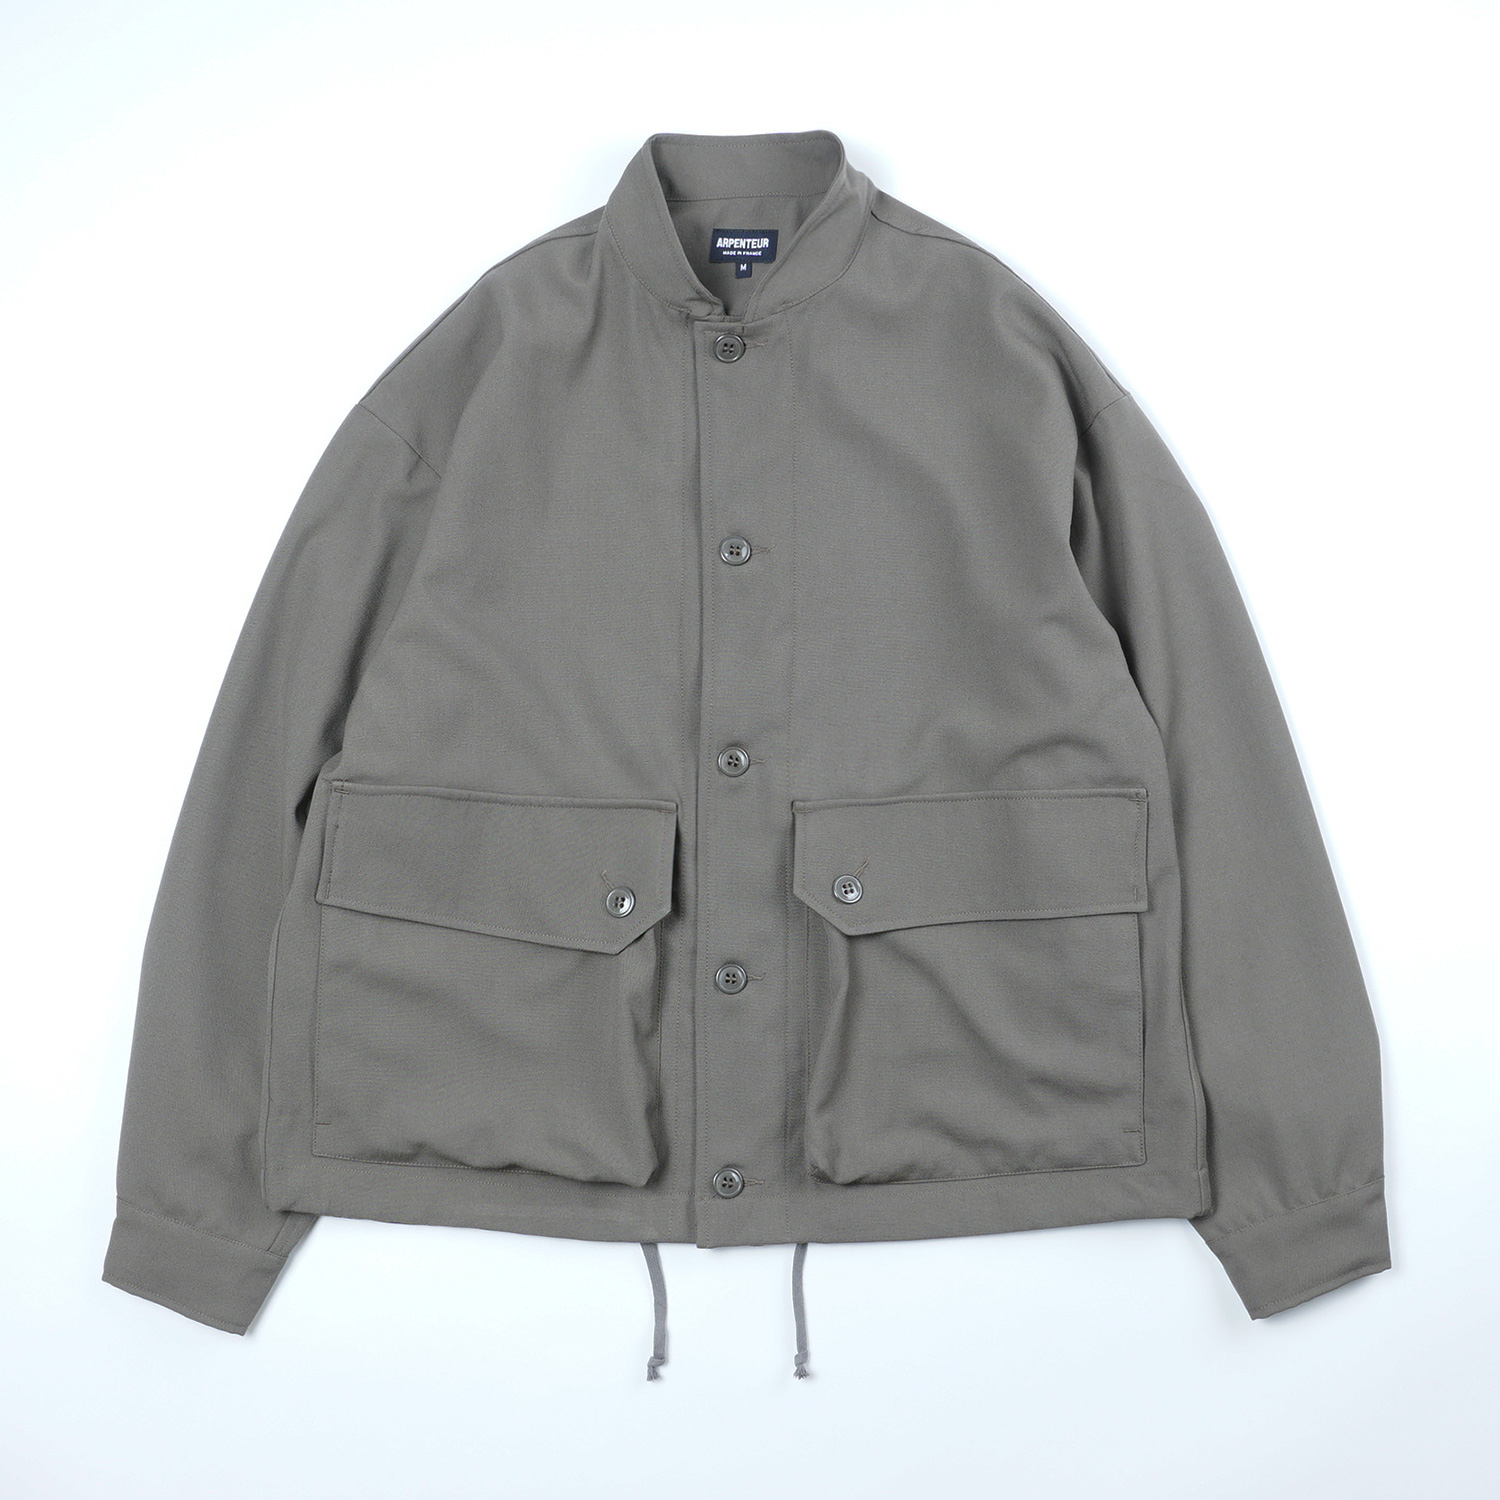 TERA Jacket in Warm grey color by Arpenteur